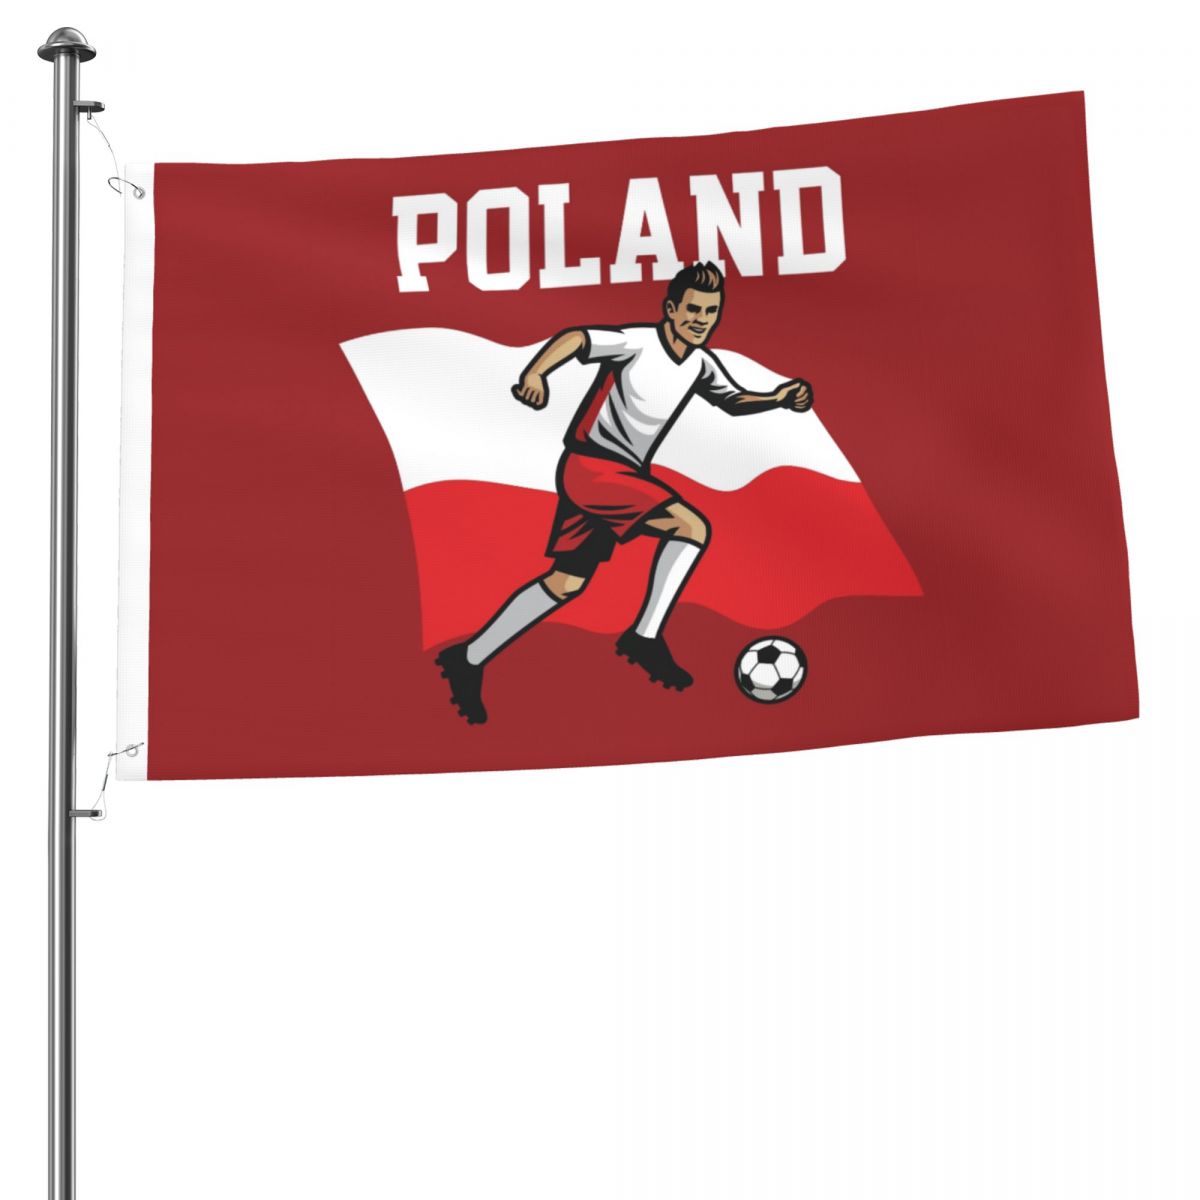 Poland Soccer Player 2x3 FT UV Resistant Flag